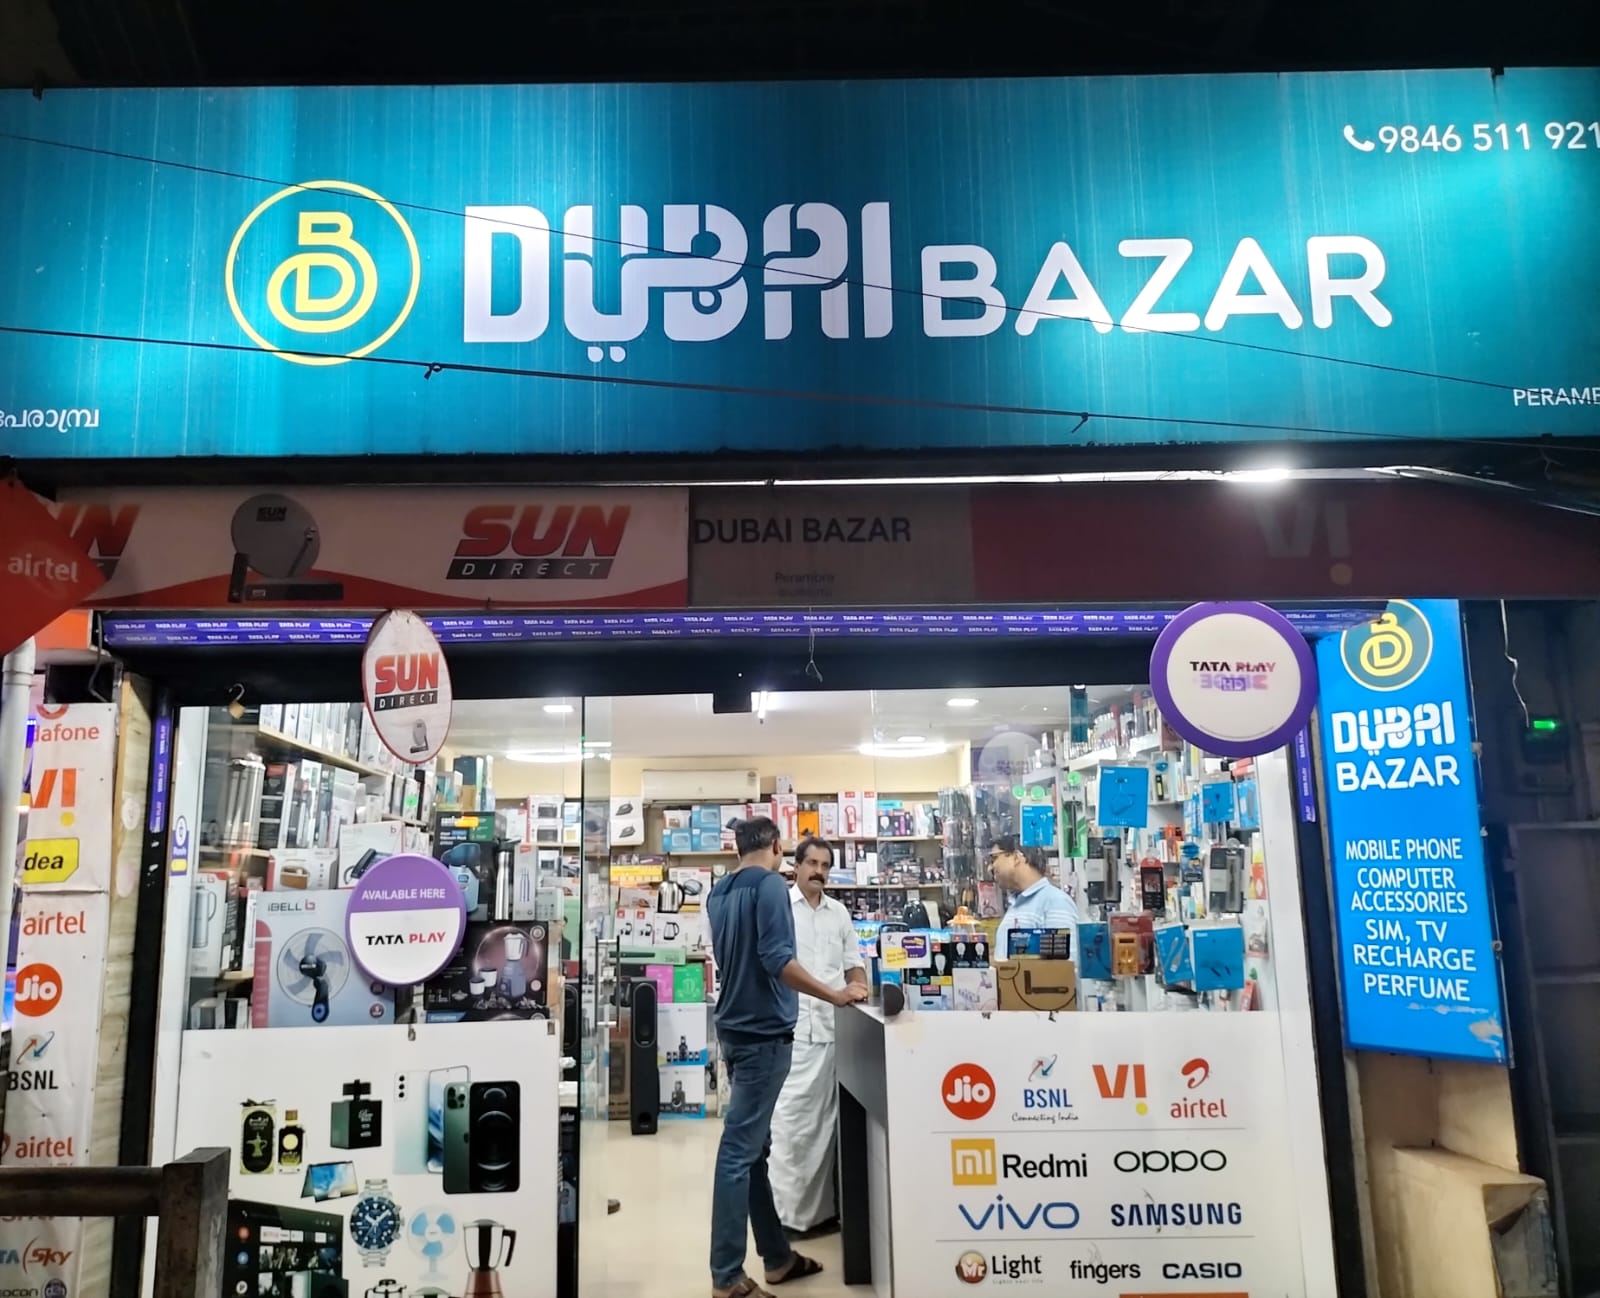 DUBAI BAZAR